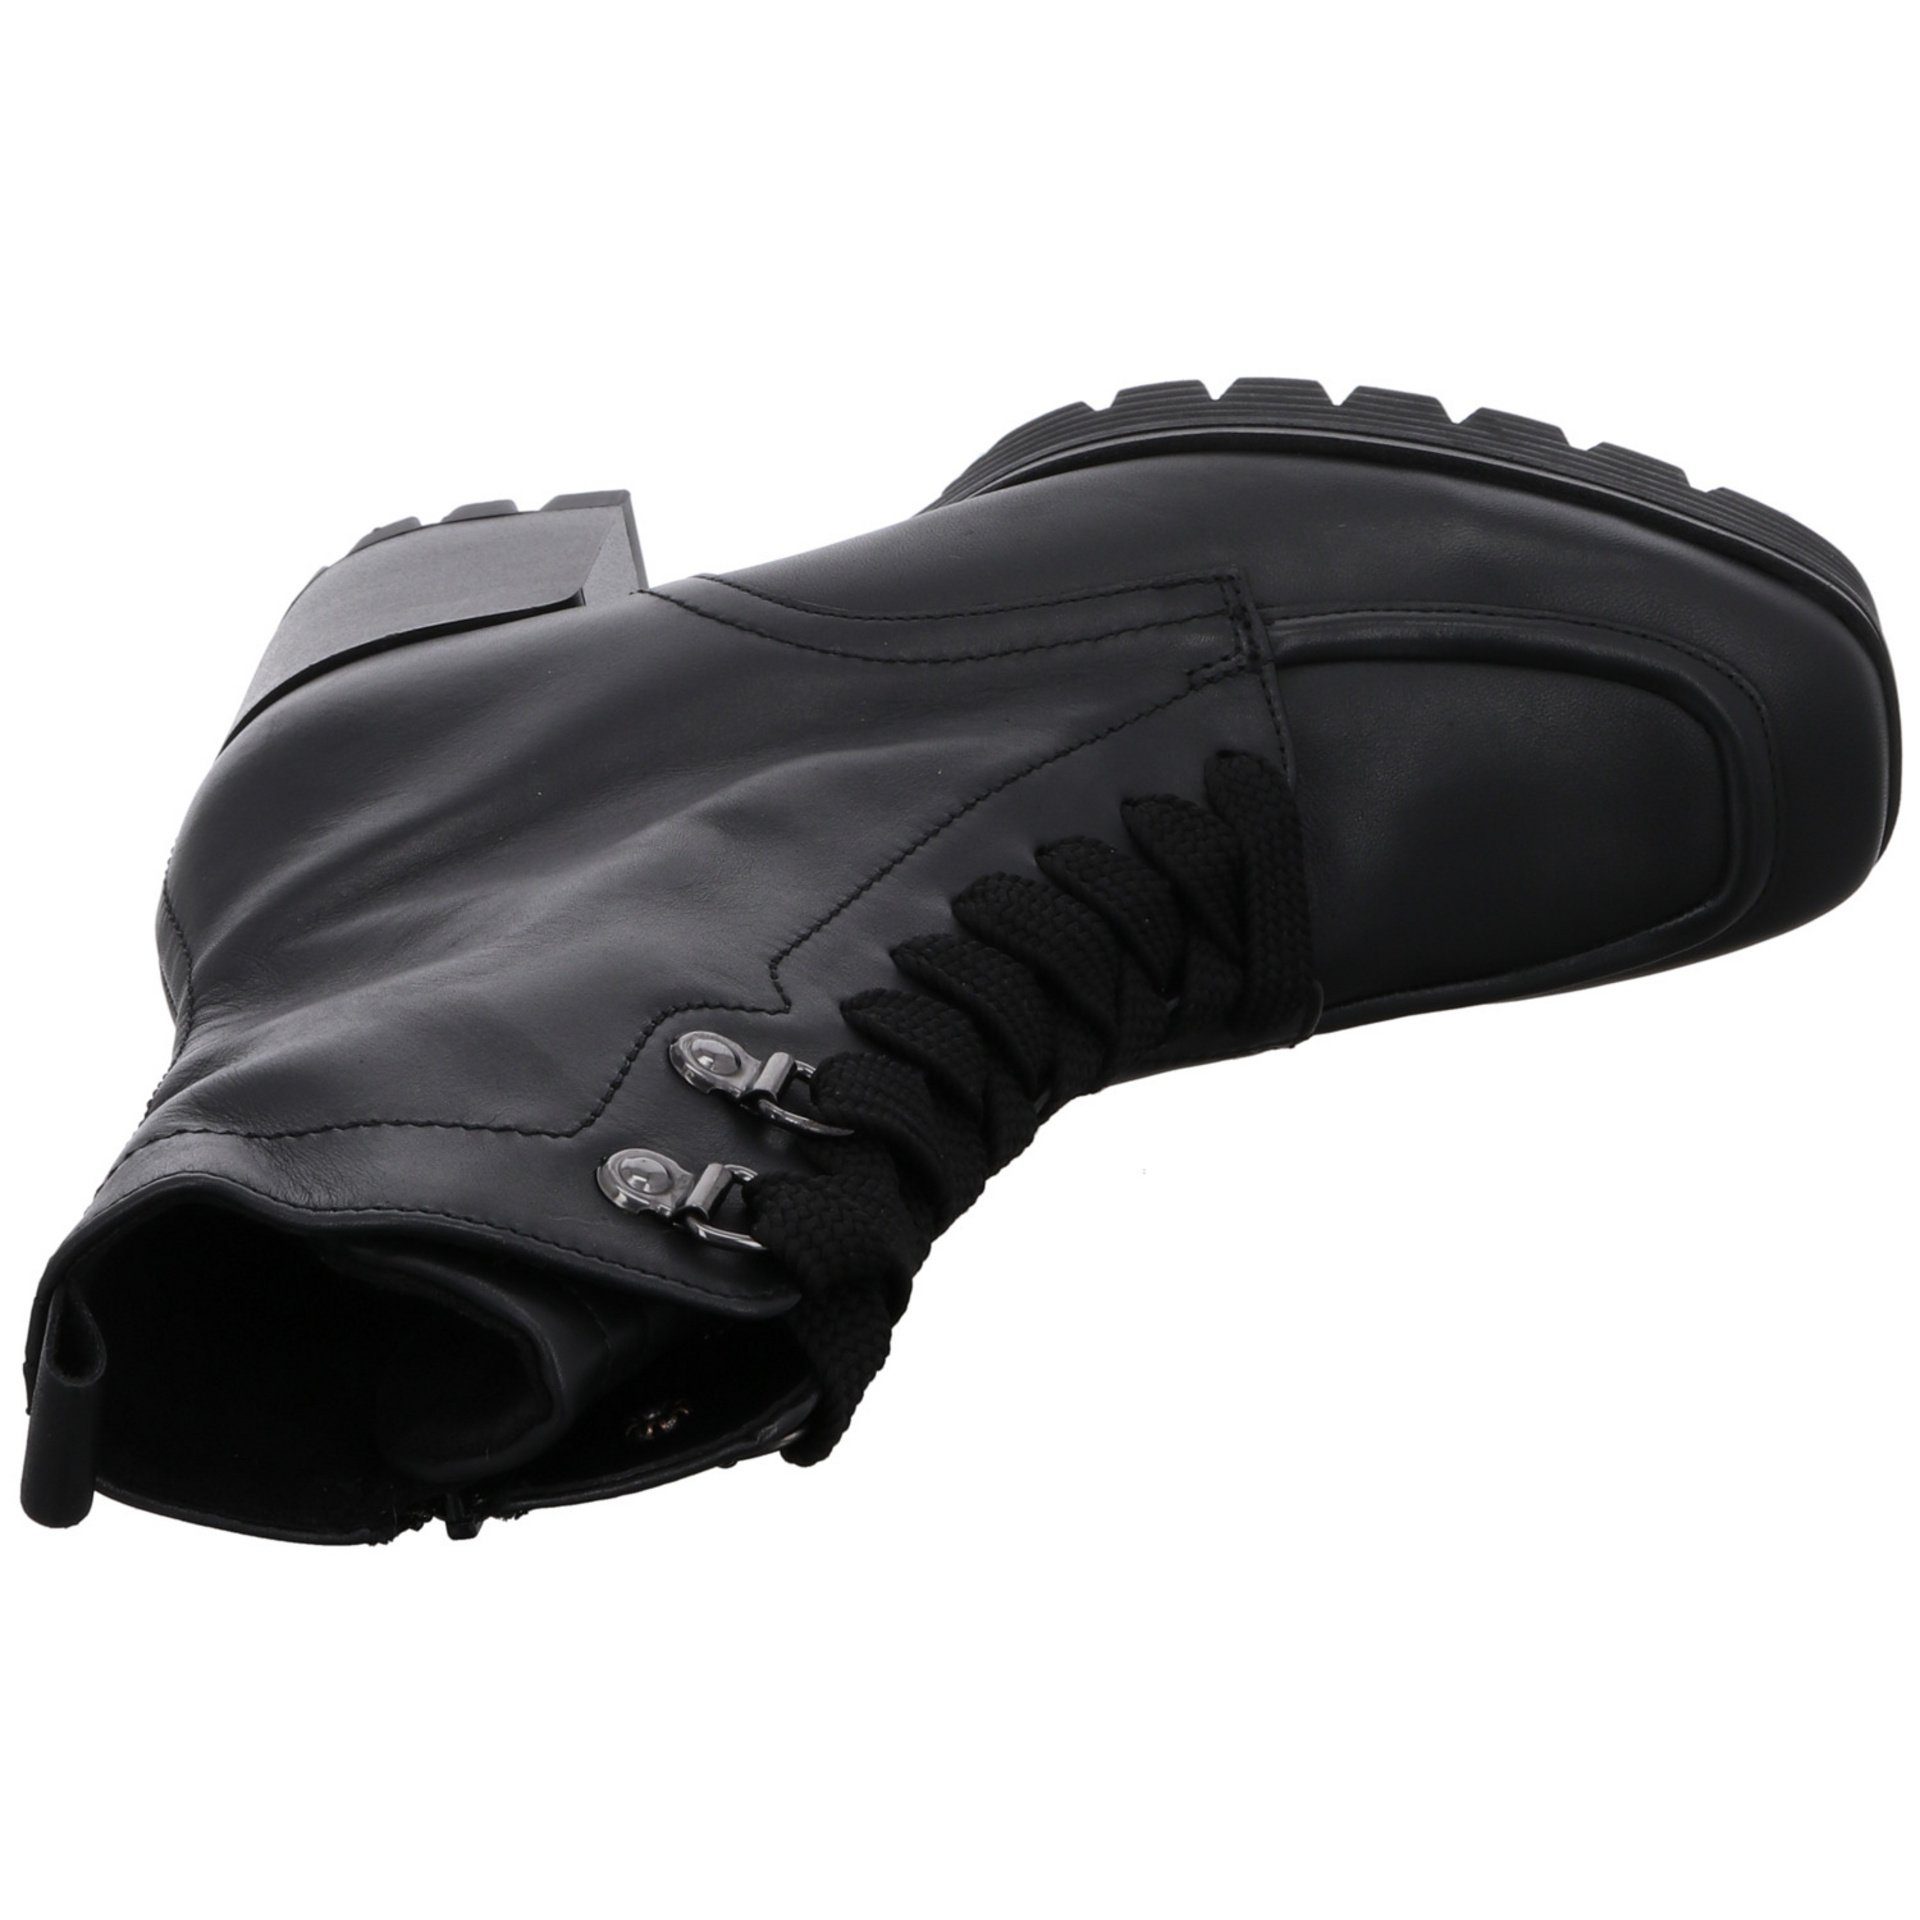 Schuhe Schnürstiefelette Veloursleder Gabor (Micro) schwarz Damen Stiefeletten Schnürstiefelette